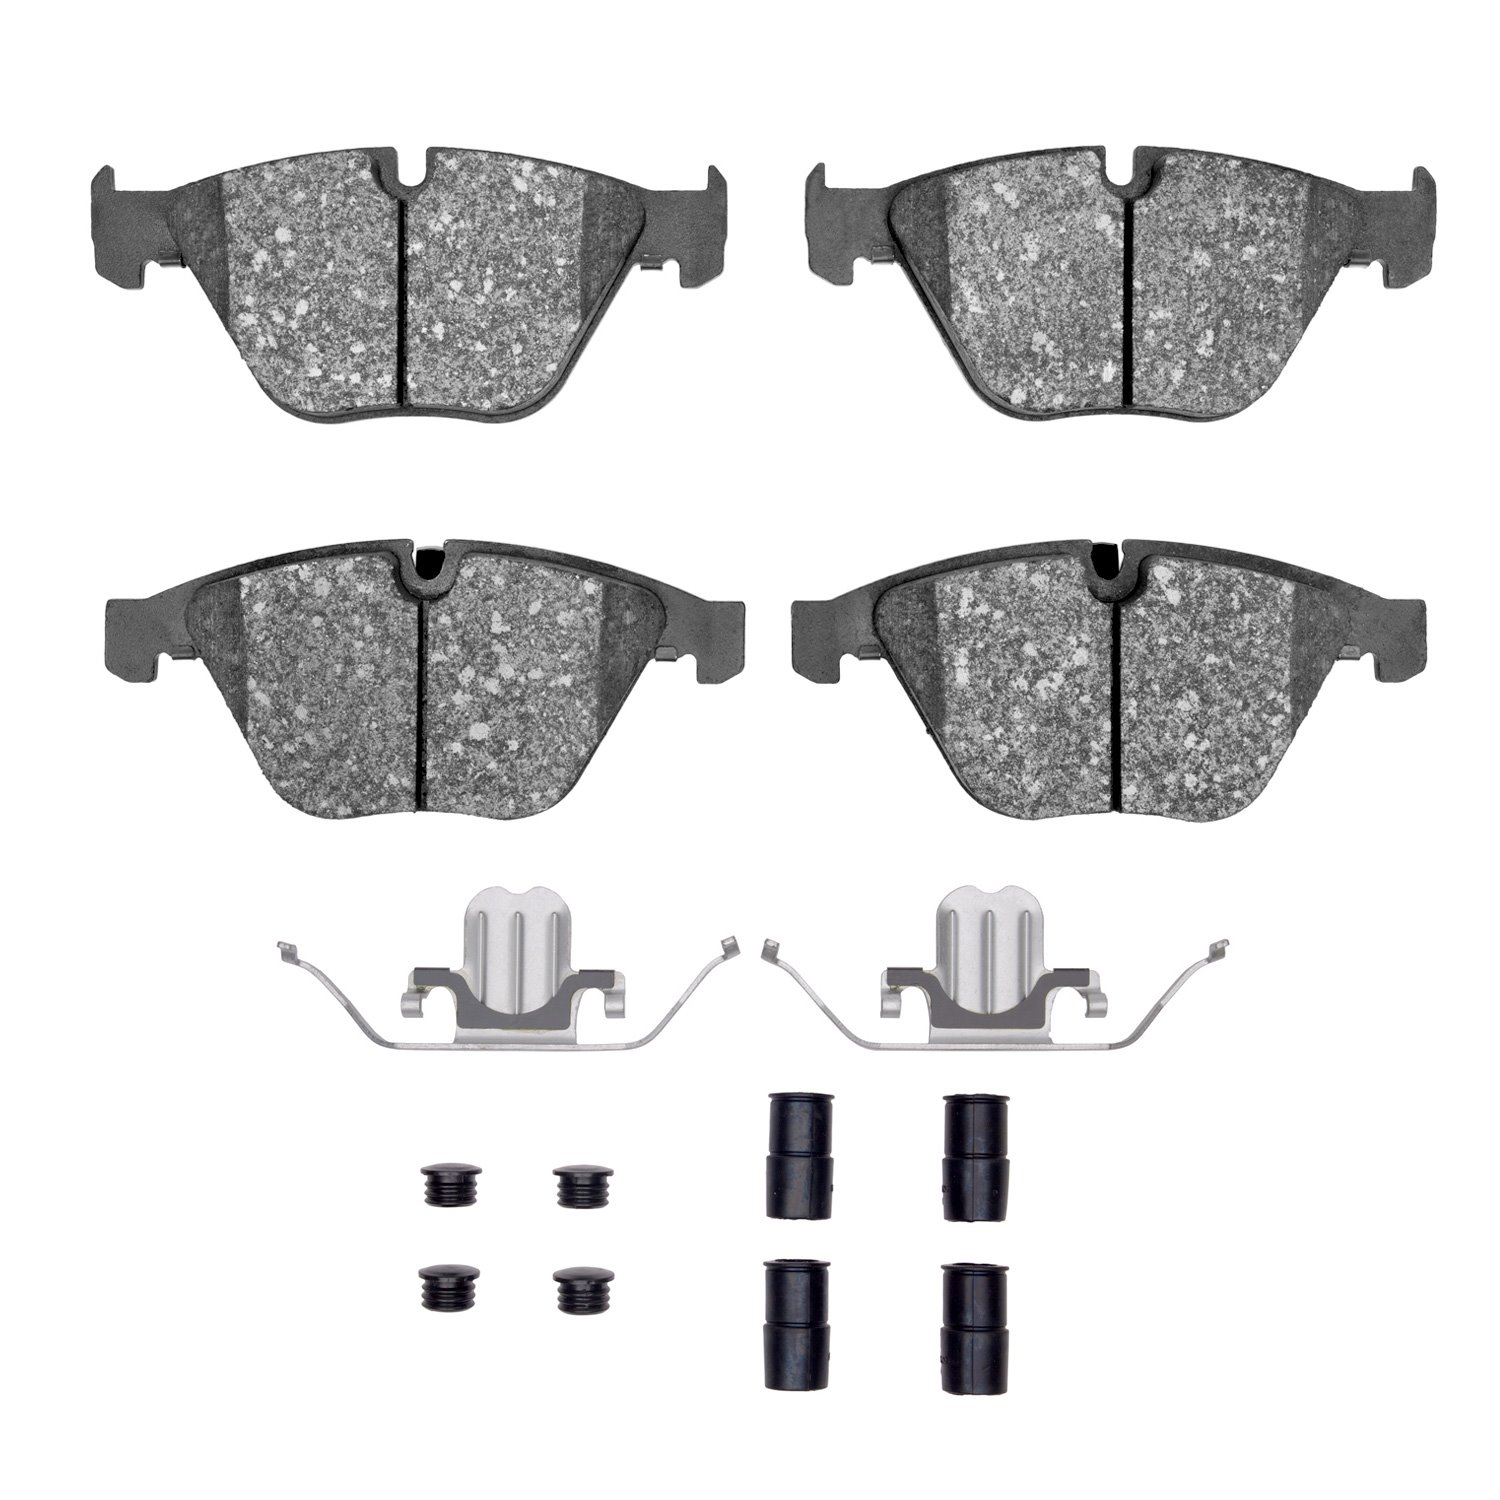 1600-1260-01 5000 Euro Ceramic Brake Pads & Hardware Kit, 2007-2015 BMW, Position: Front